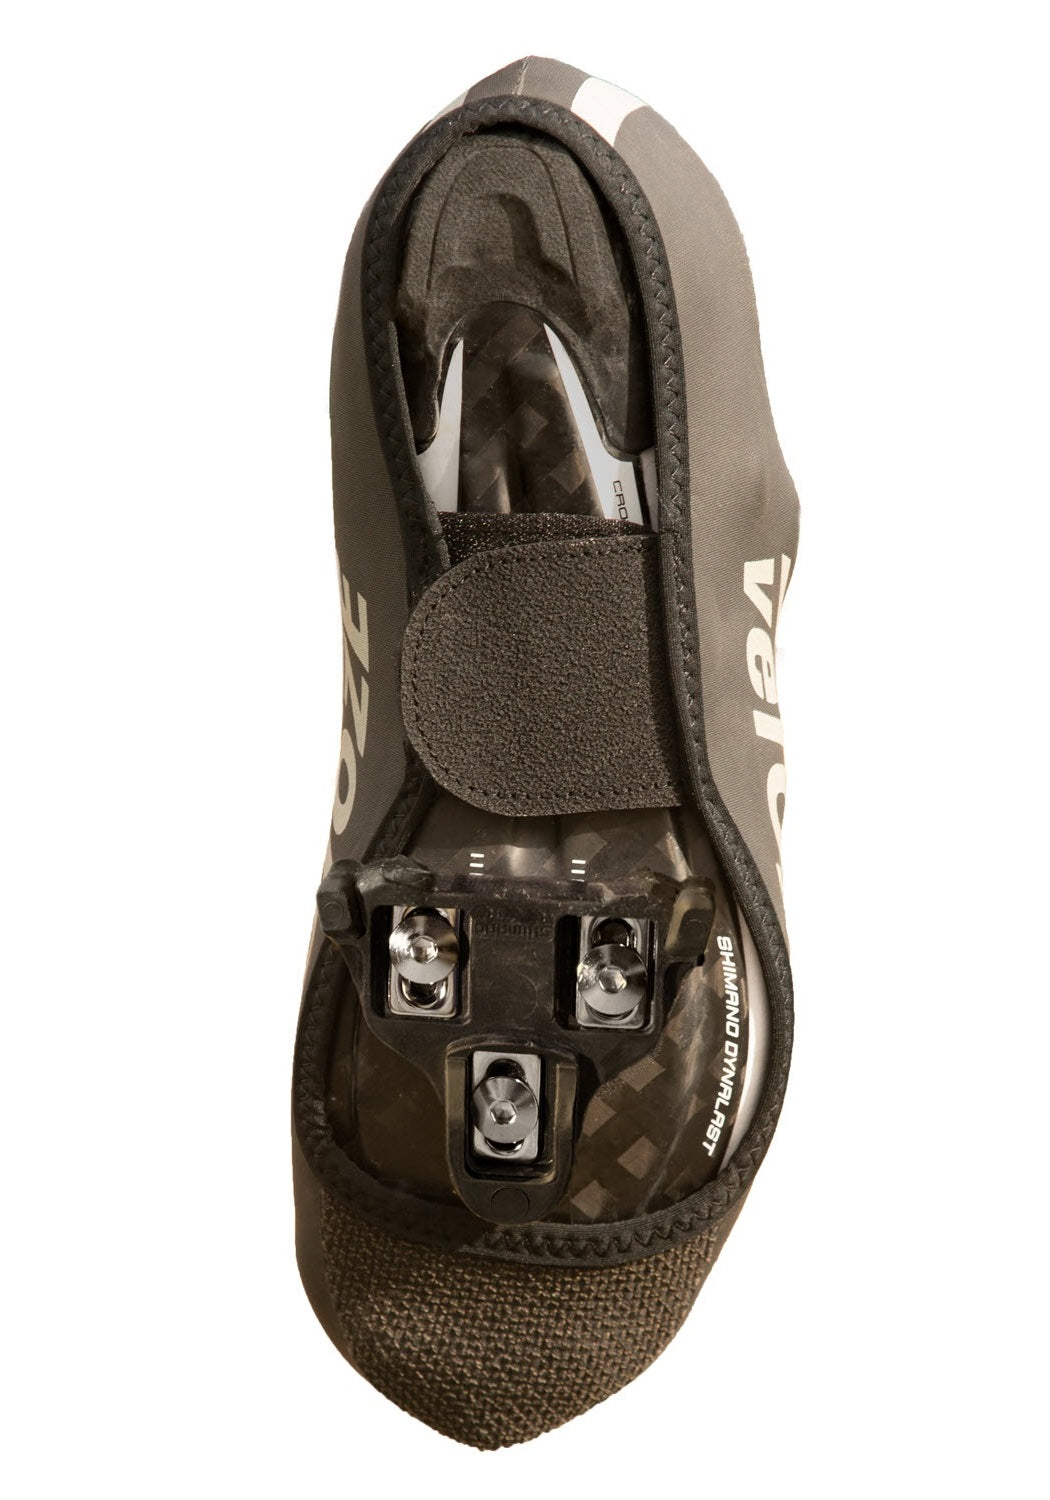 veloToze Neoprene Shoe Covers (Waterproof Cuffs Included)